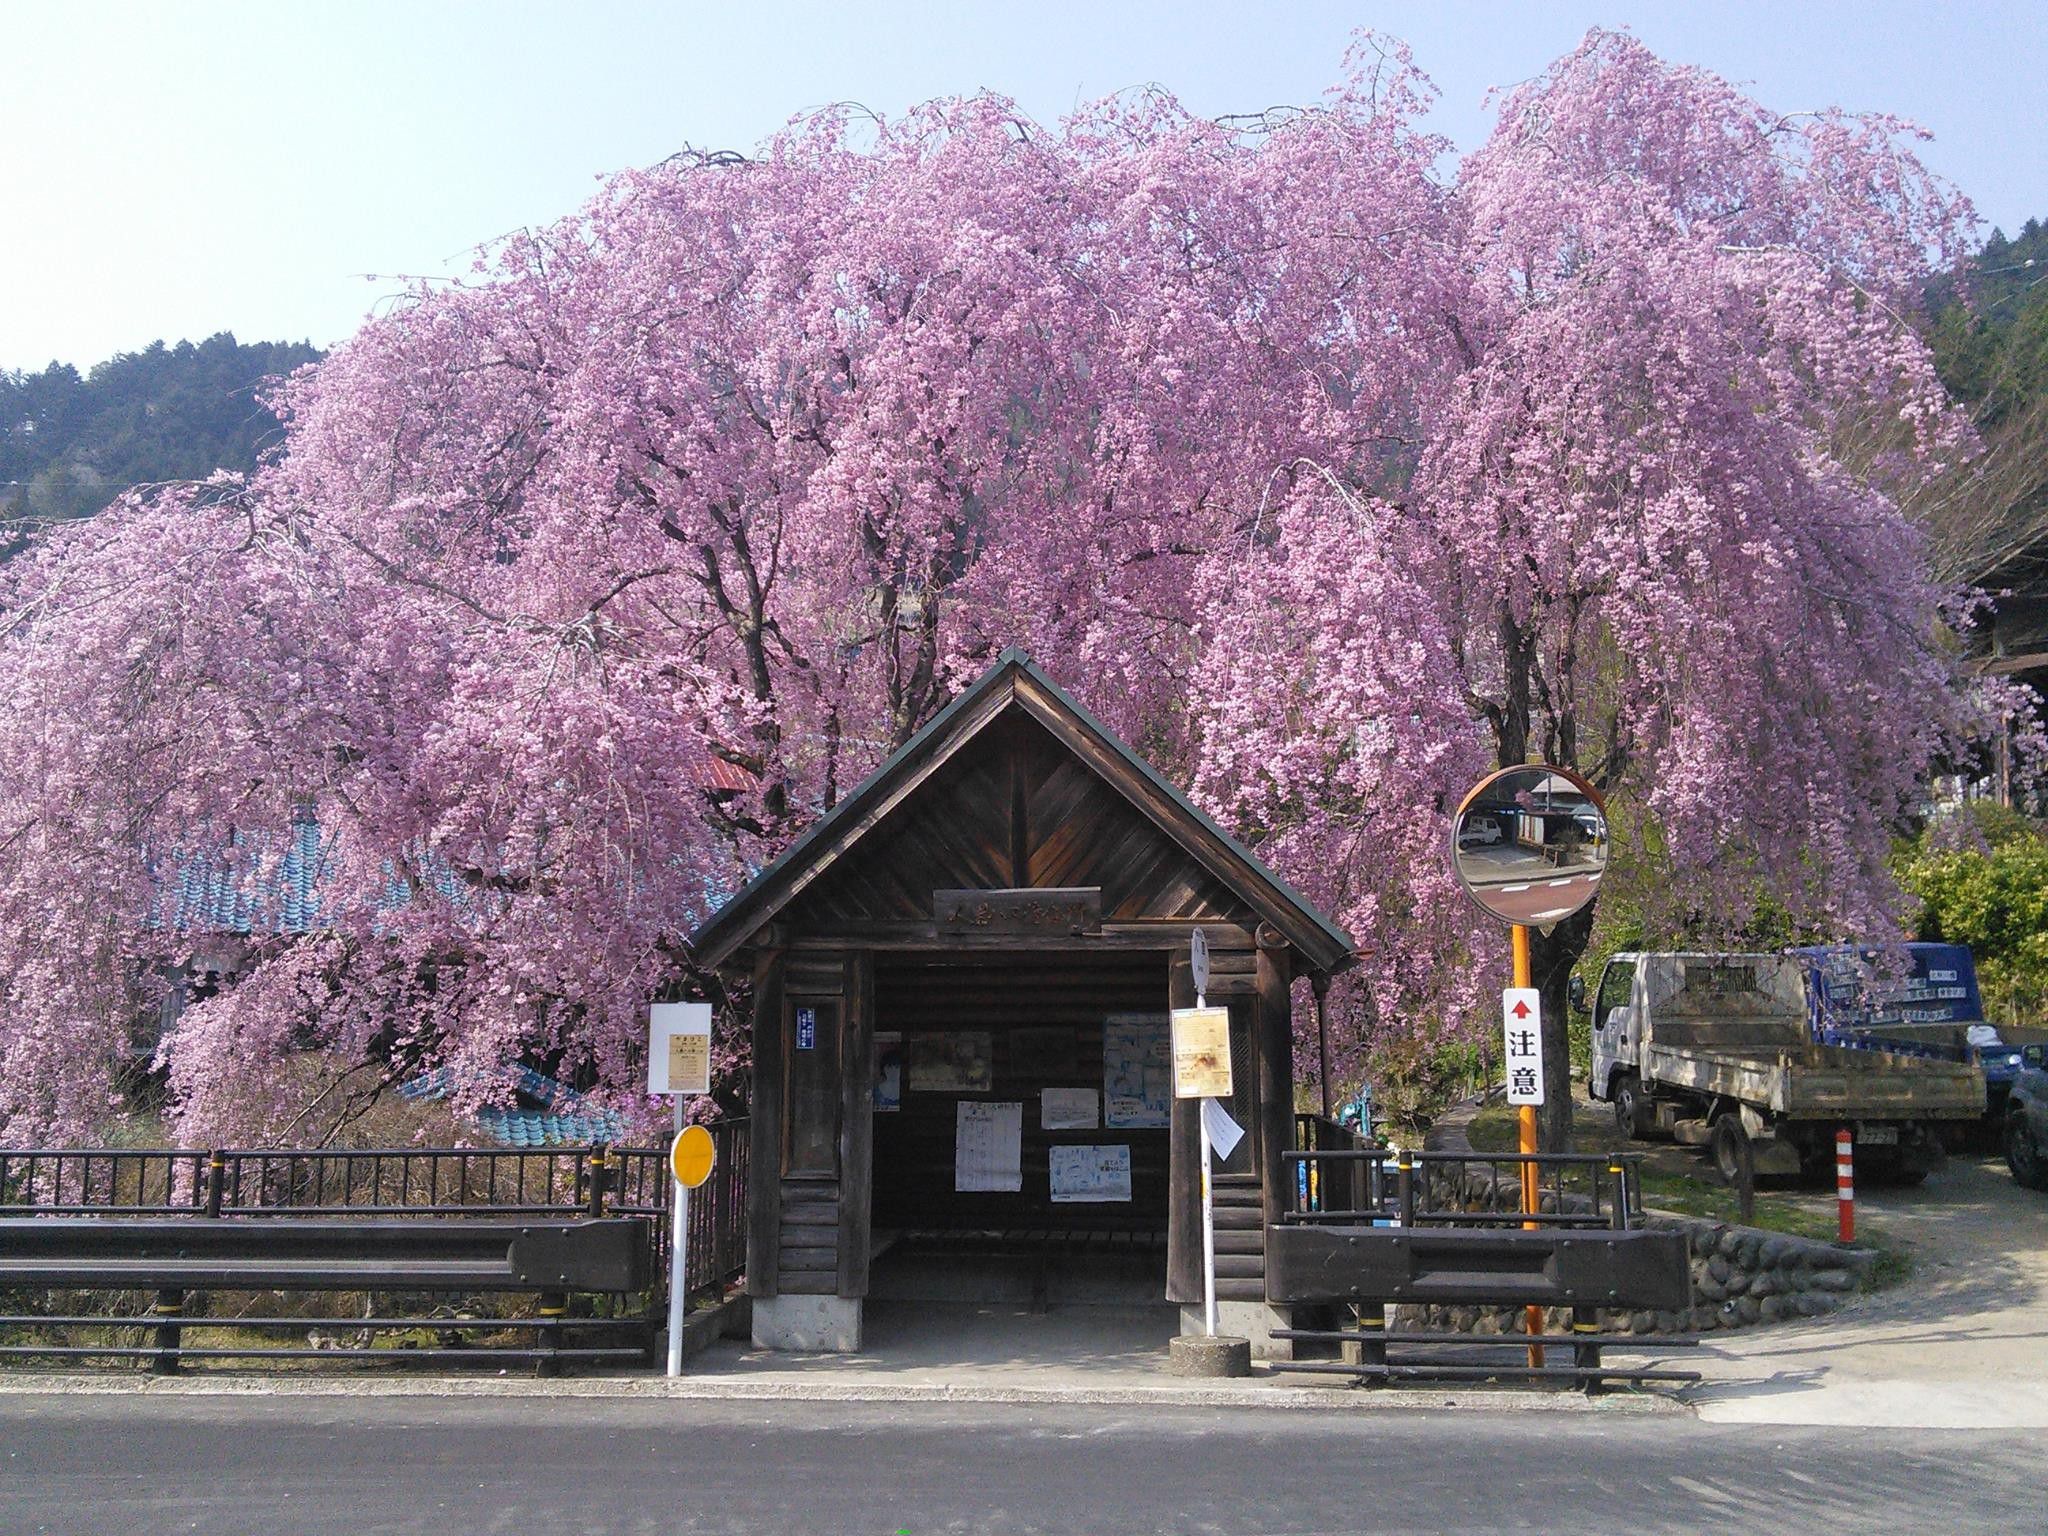 ノスタルジックな風景と人のぬくもり…東京唯一の村「檜原村」が素敵